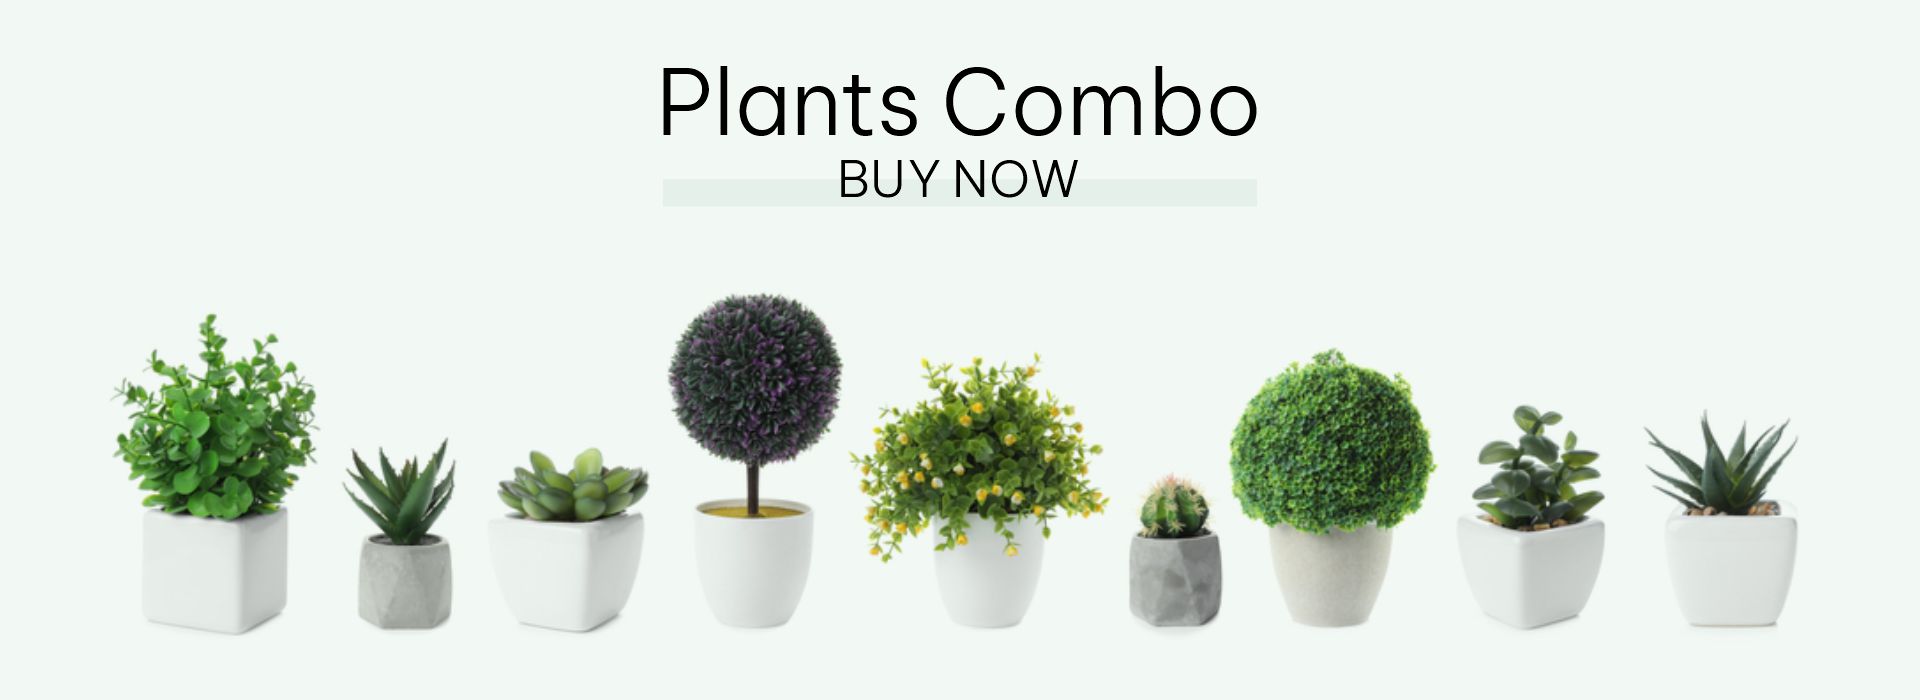 plantscombo